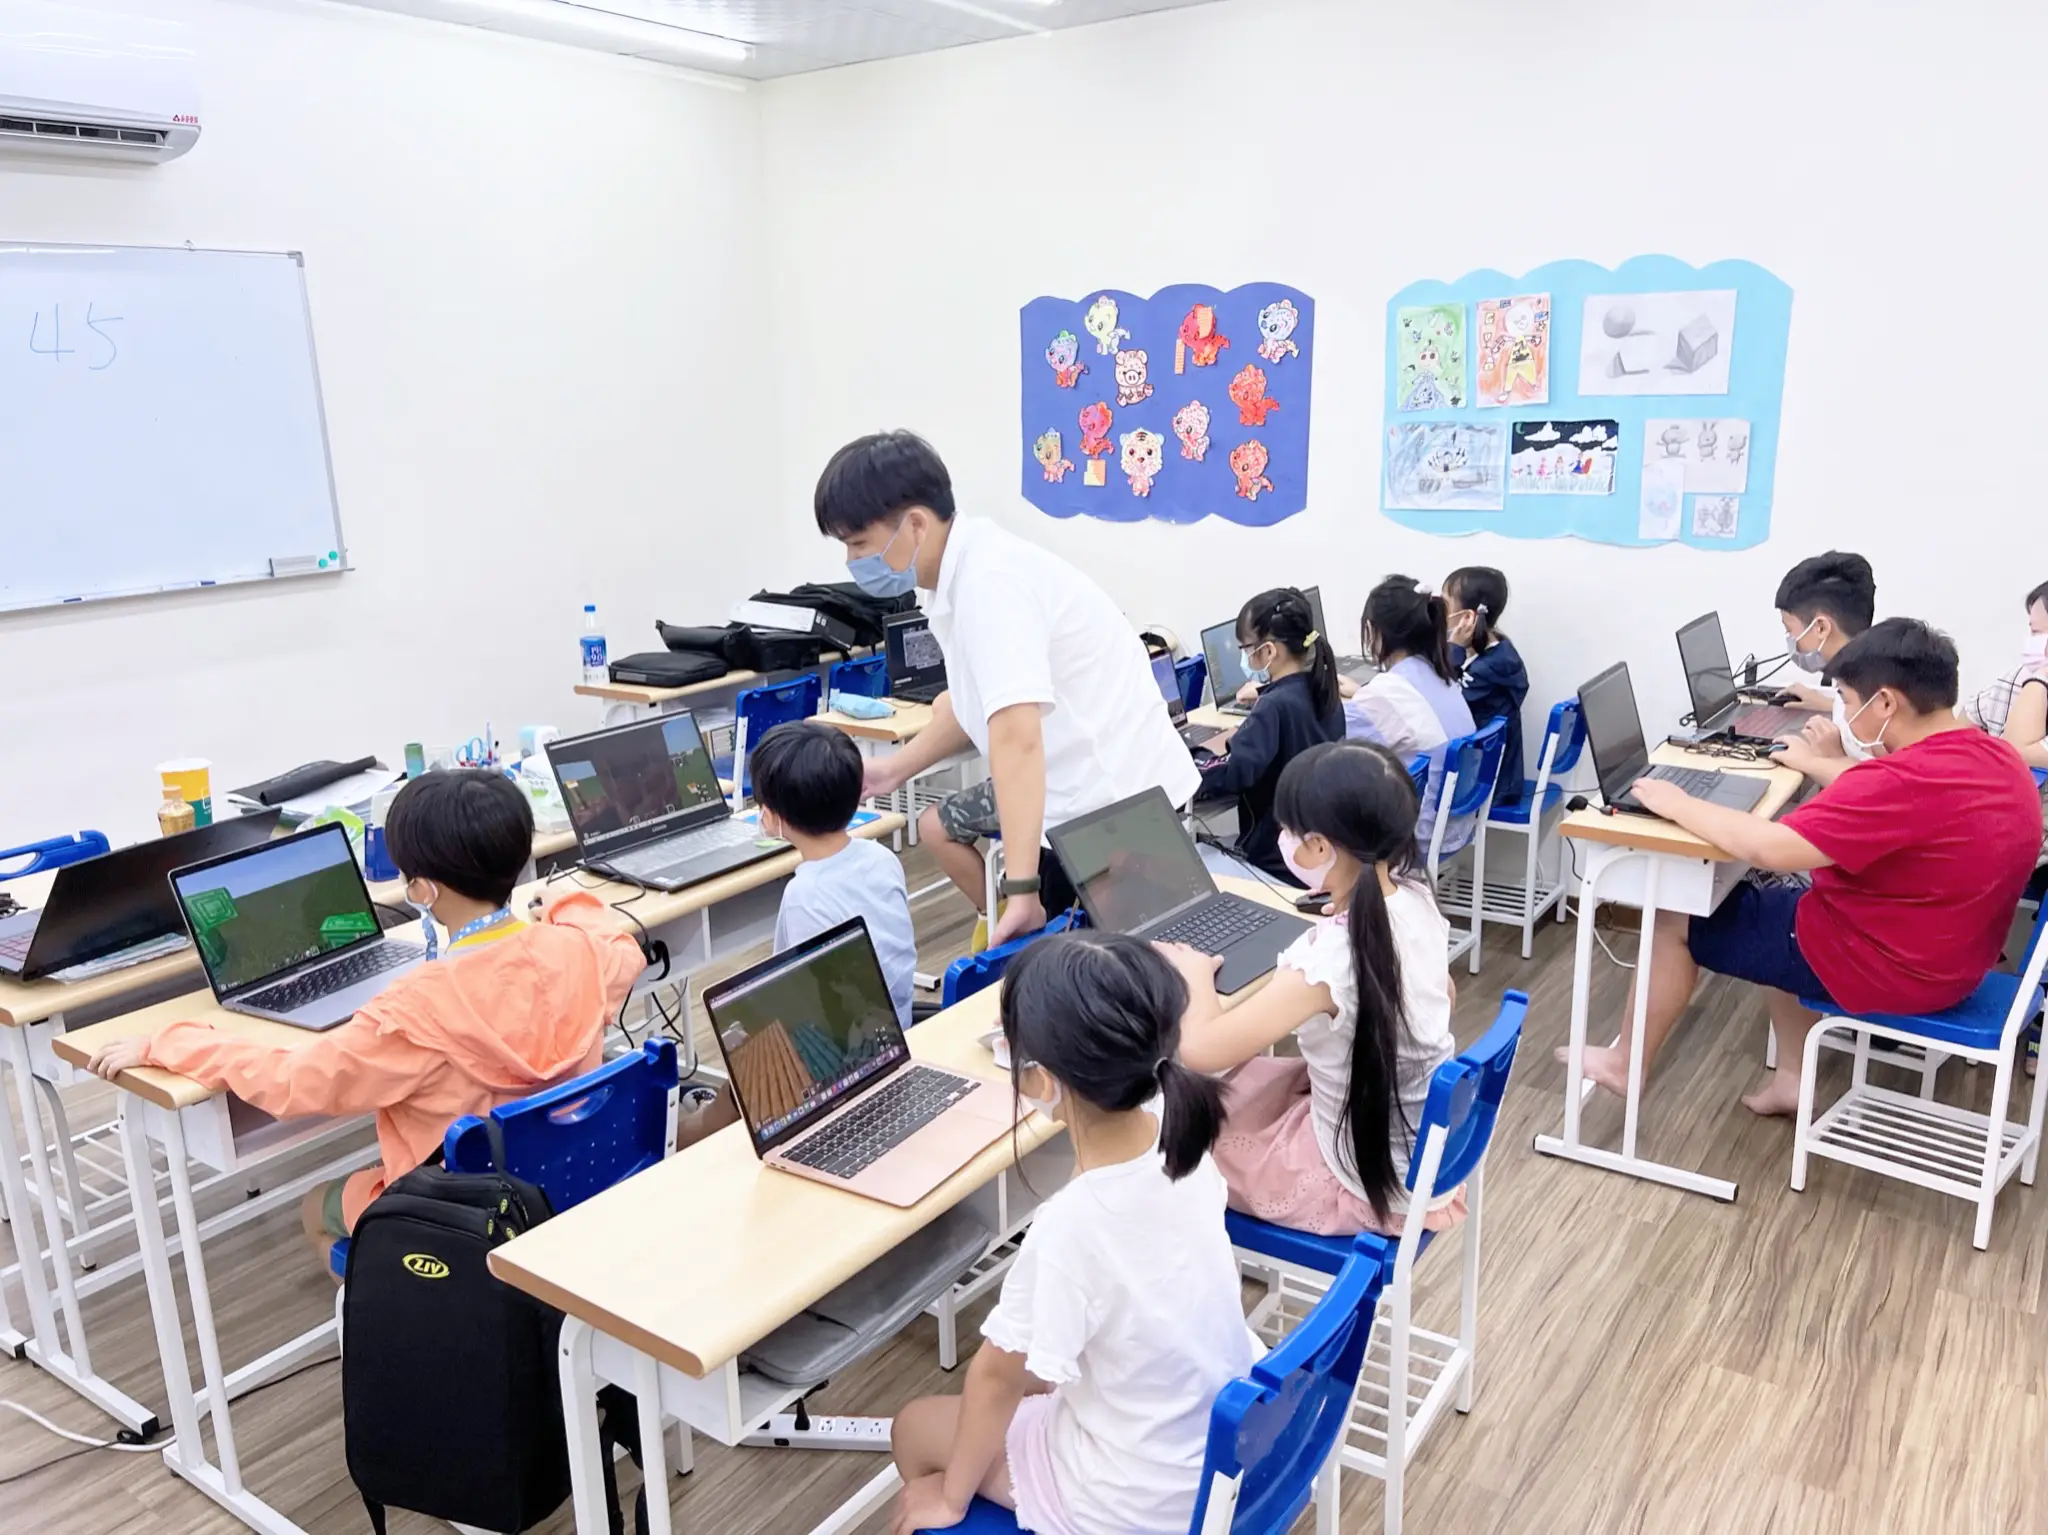 一位老師正在指導教室中使用Minecraft學習程式設計的同學。